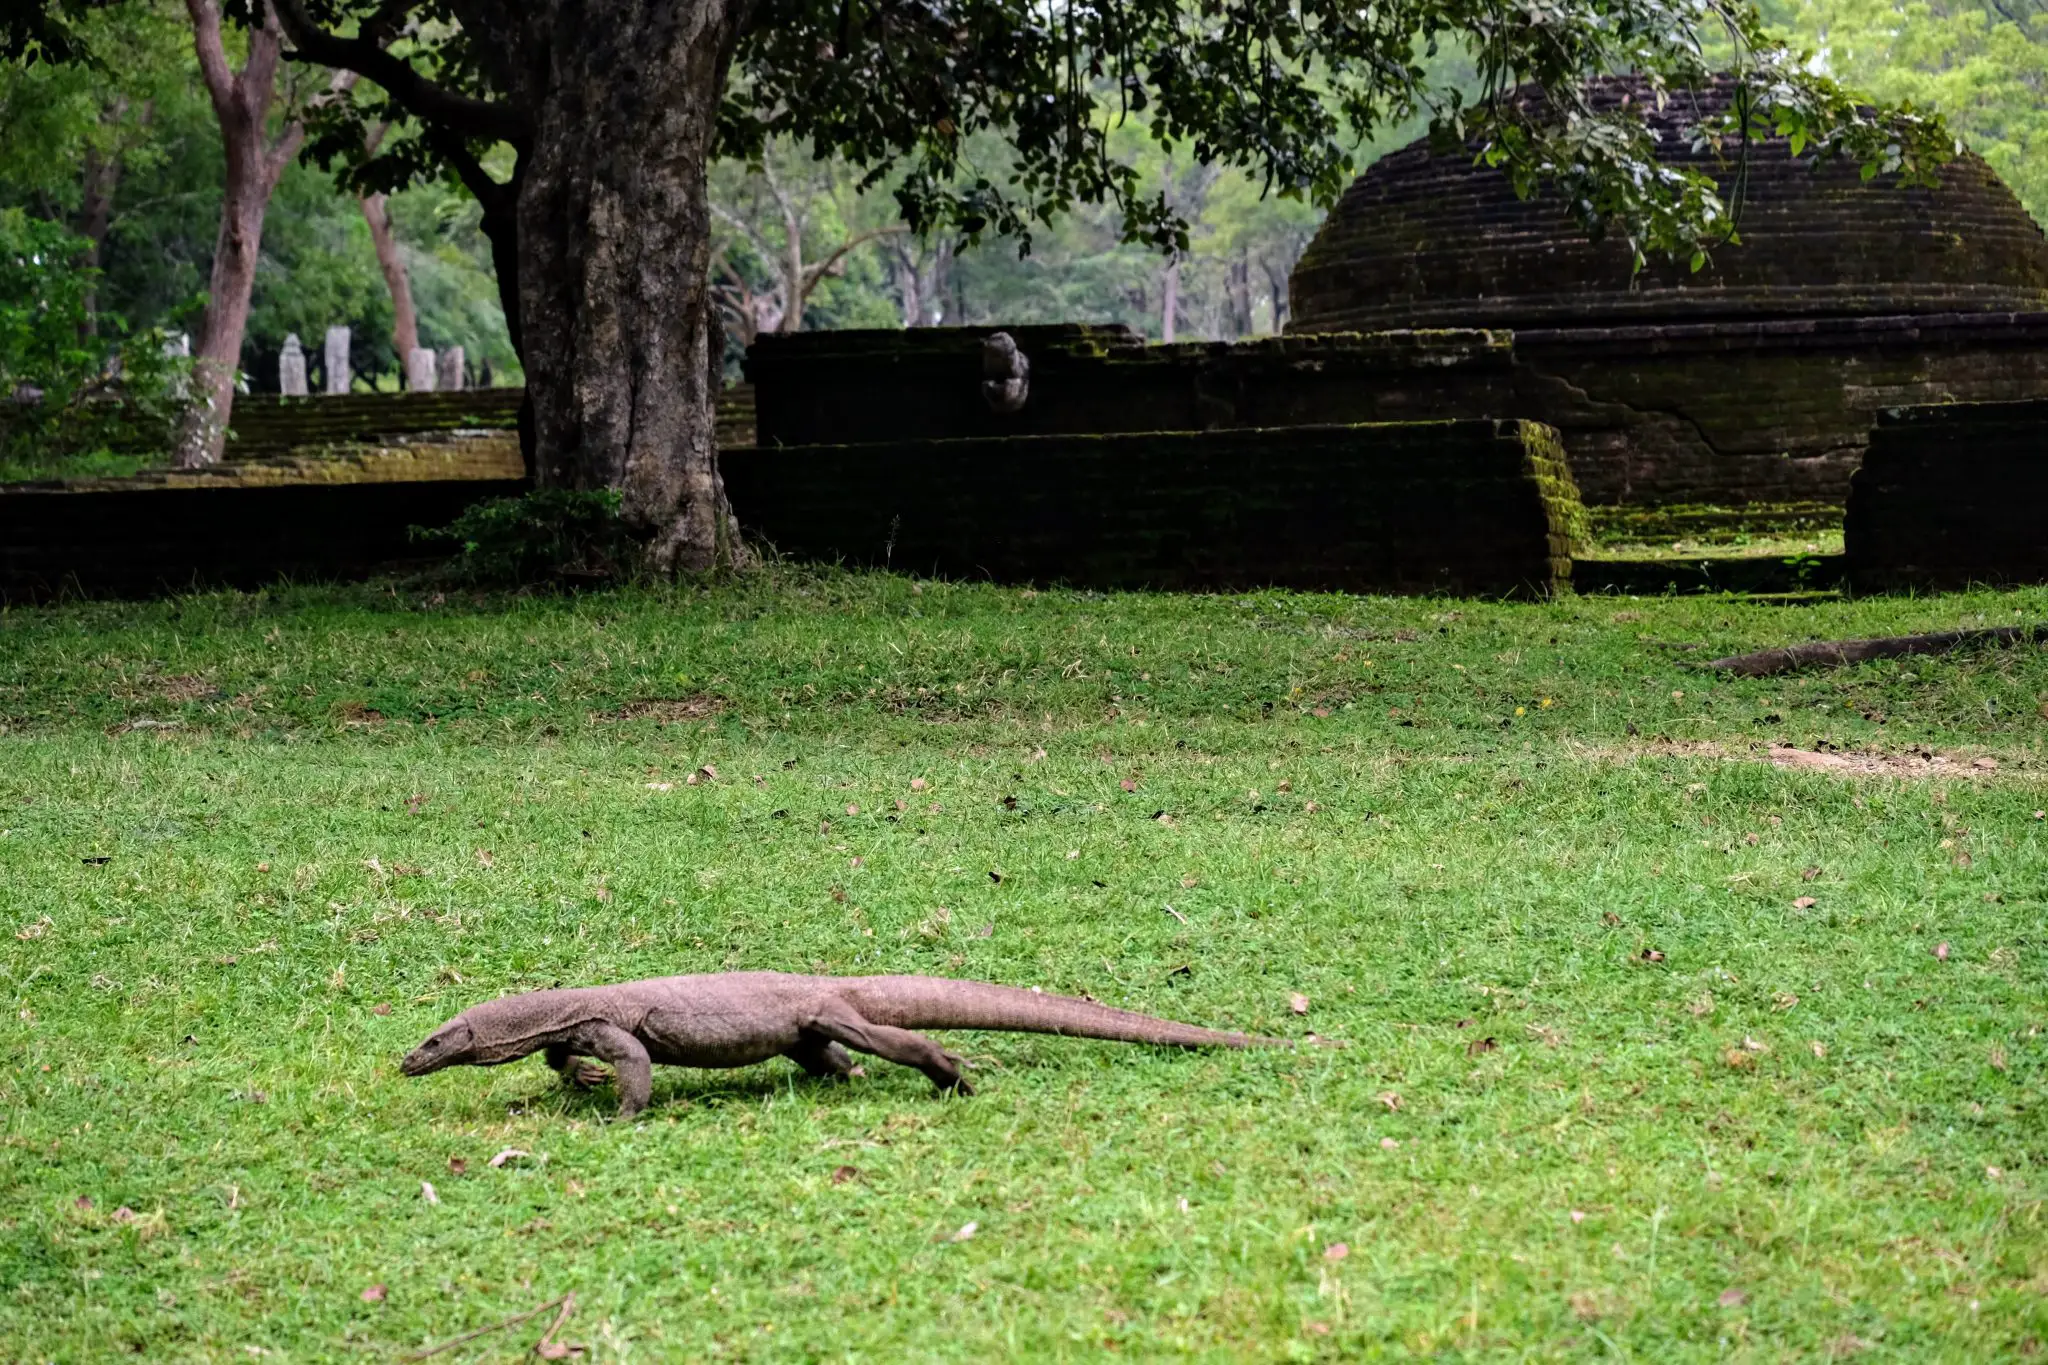 Land monitor lizard at Polonnaruwa, Sri Lanka